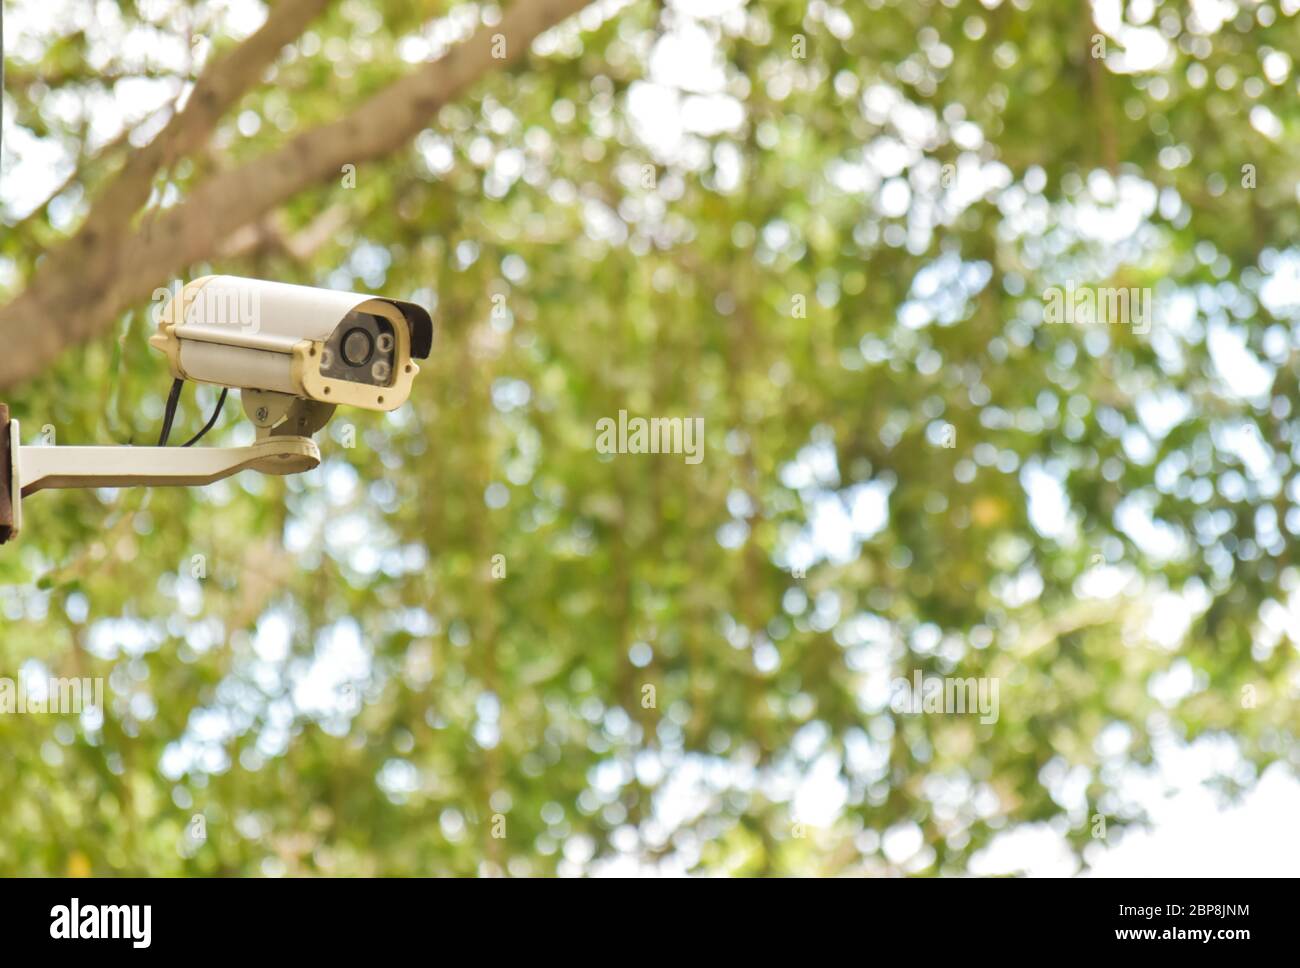 Kamera mit geschlossenem Stromkreis auf dem grünen Bokeh-Hintergrund Stockfoto